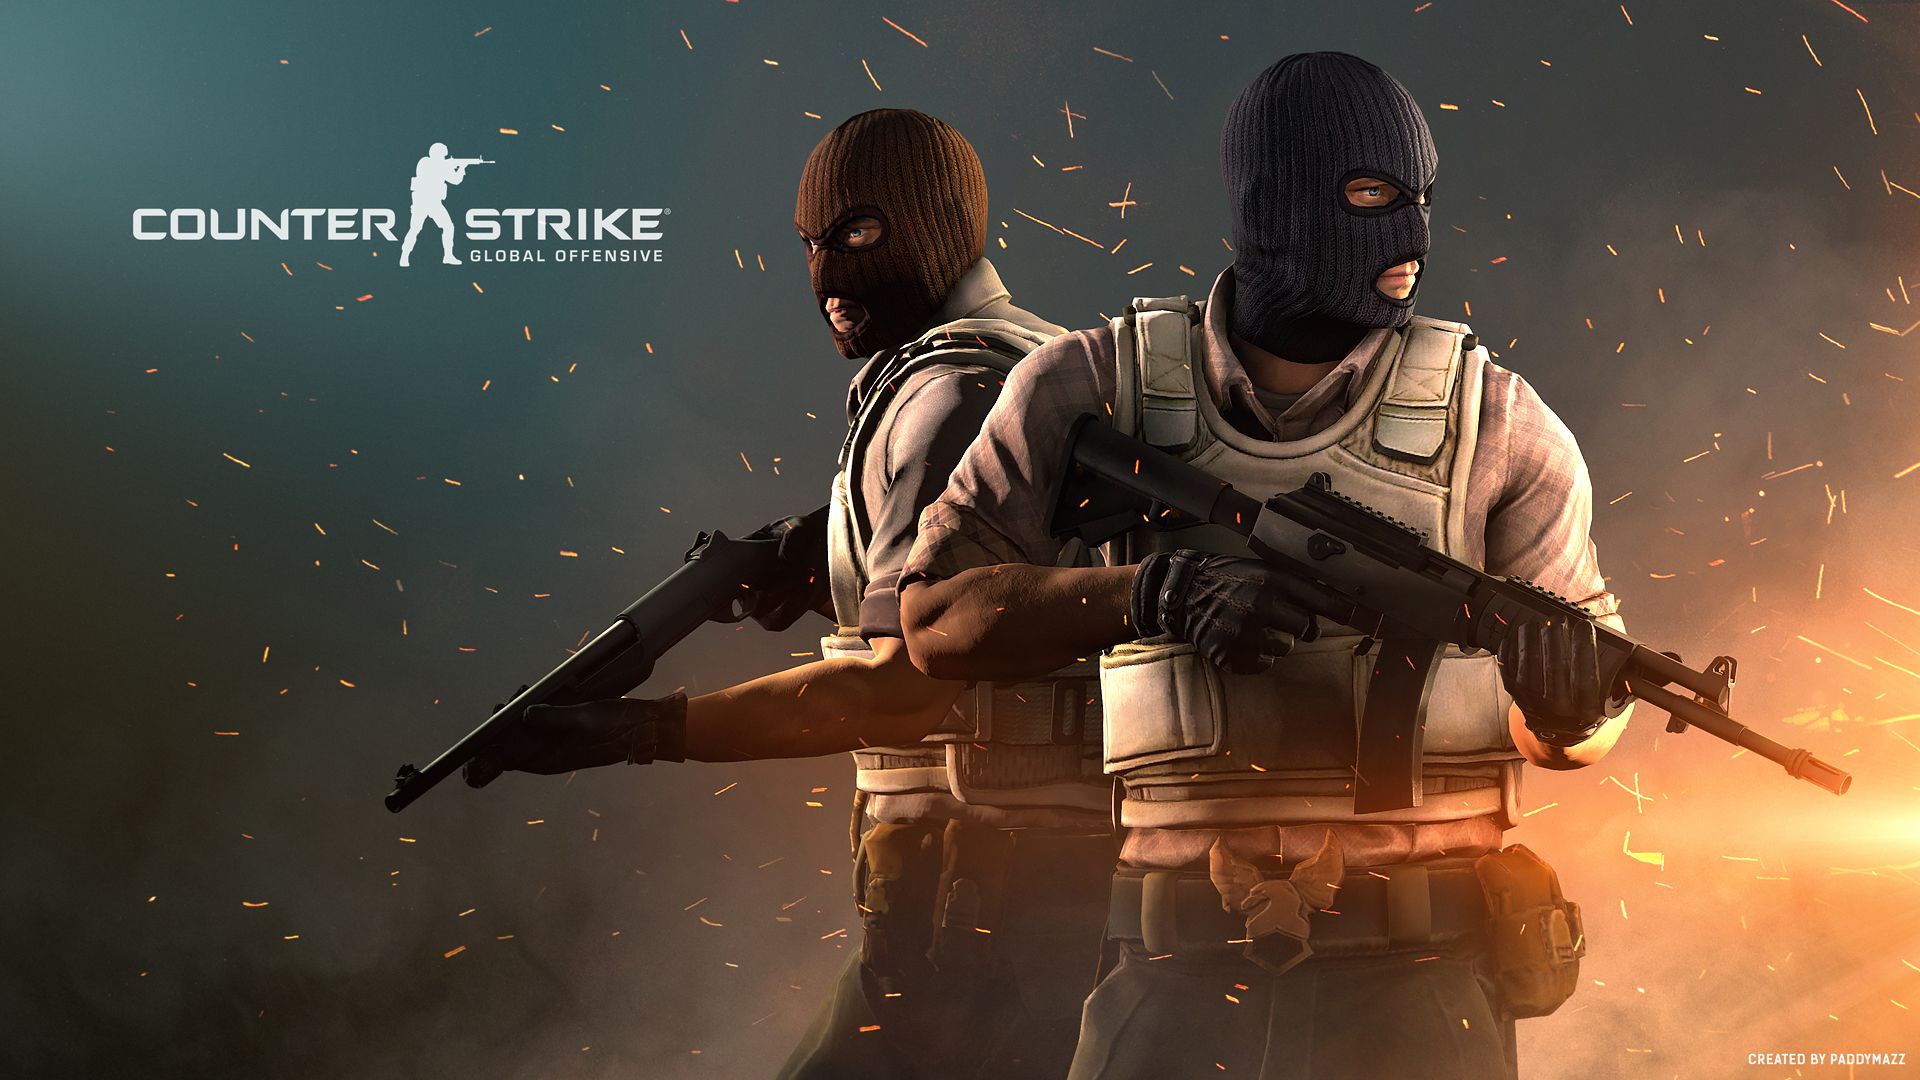 Counter-Strike Global Offensive: atualização traz melhorias e novos mapas